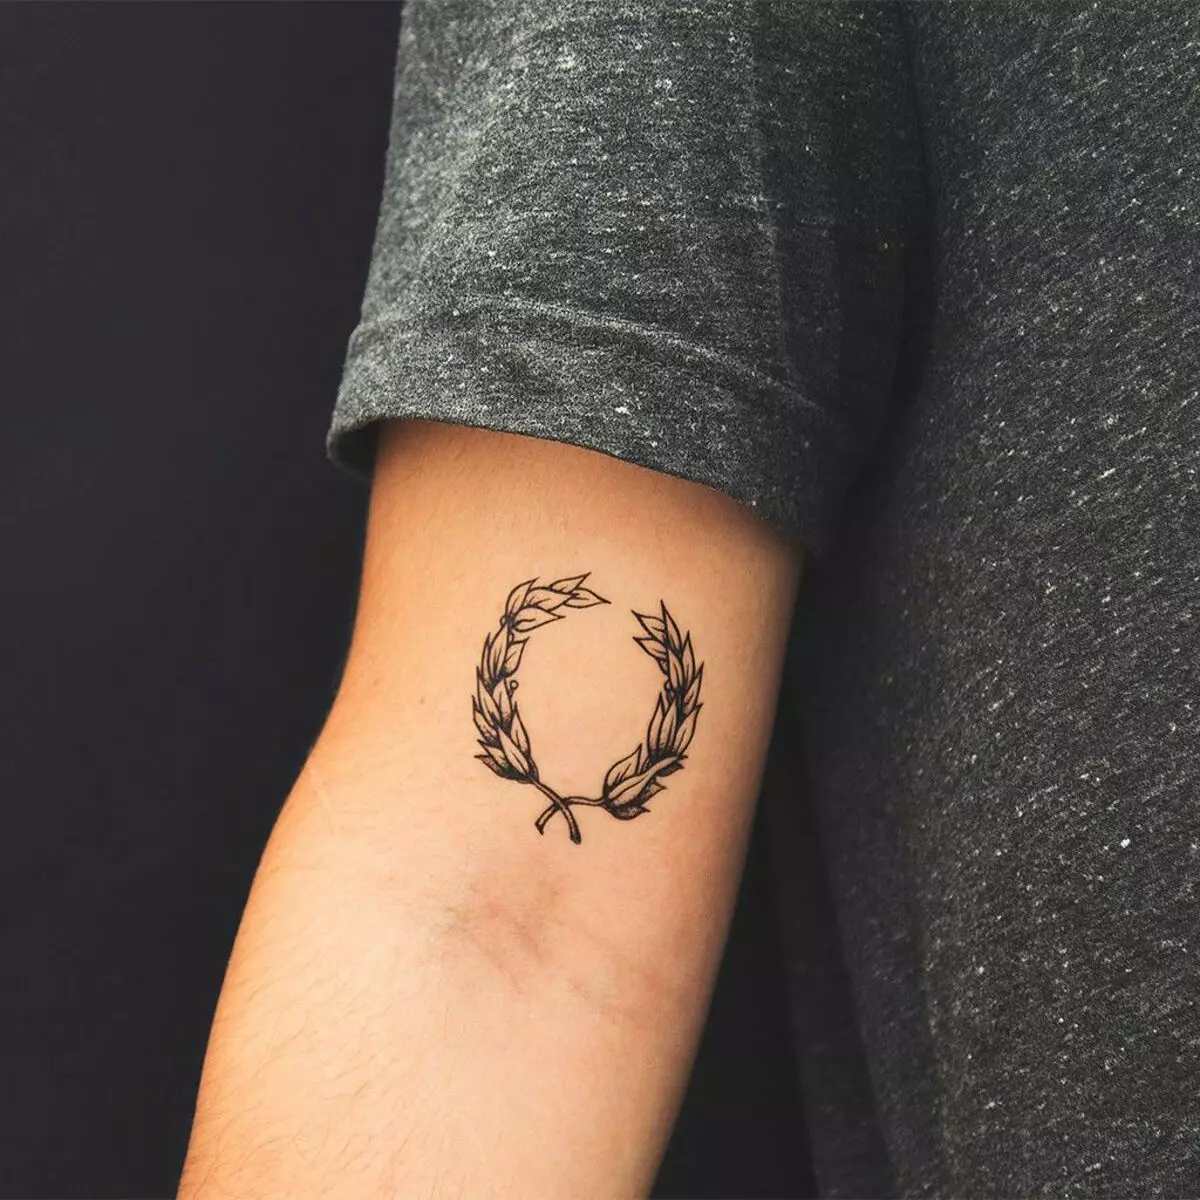 Romeinse tatoeage: tatoeage met een legionaire van het oude Rome, schetsen en betekenis, god Mars, teken van de legio en helm, andere tatoeage 299_27